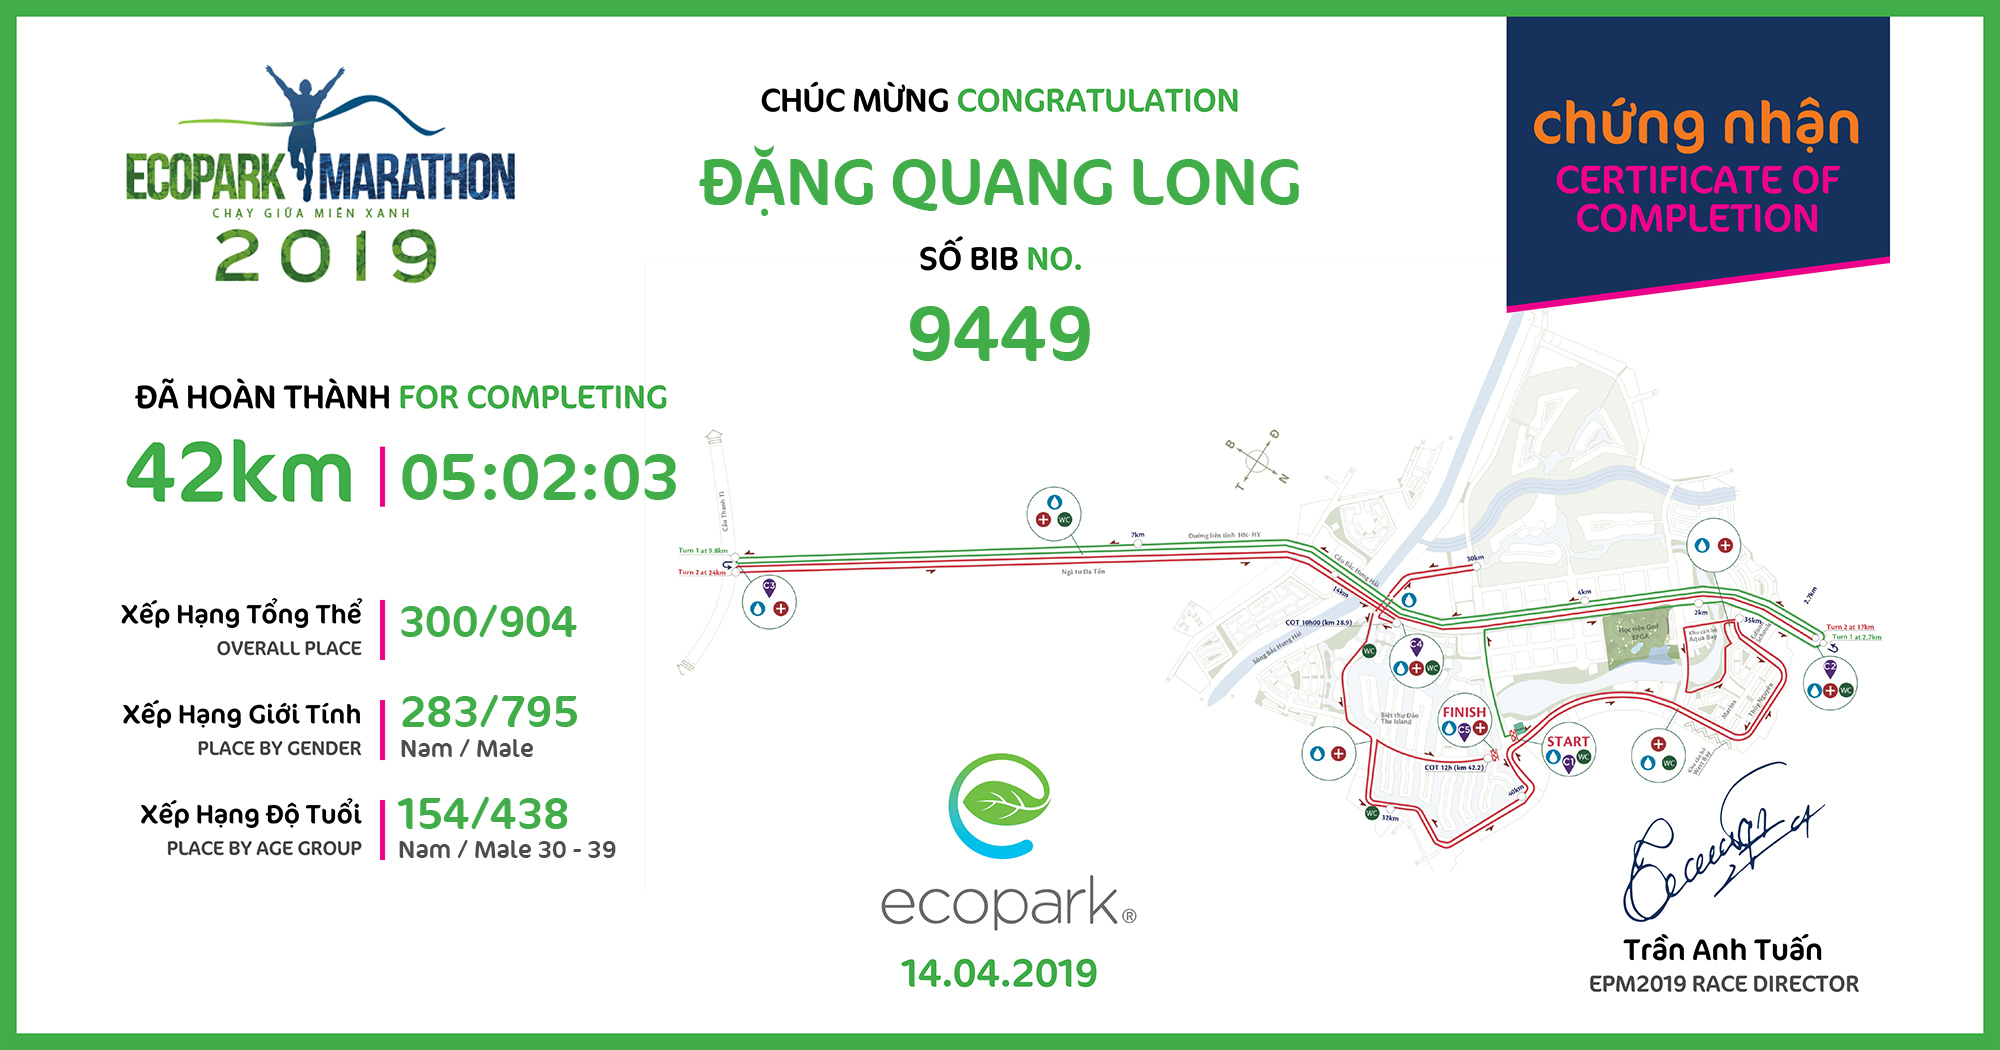 9449 - Đặng Quang Long